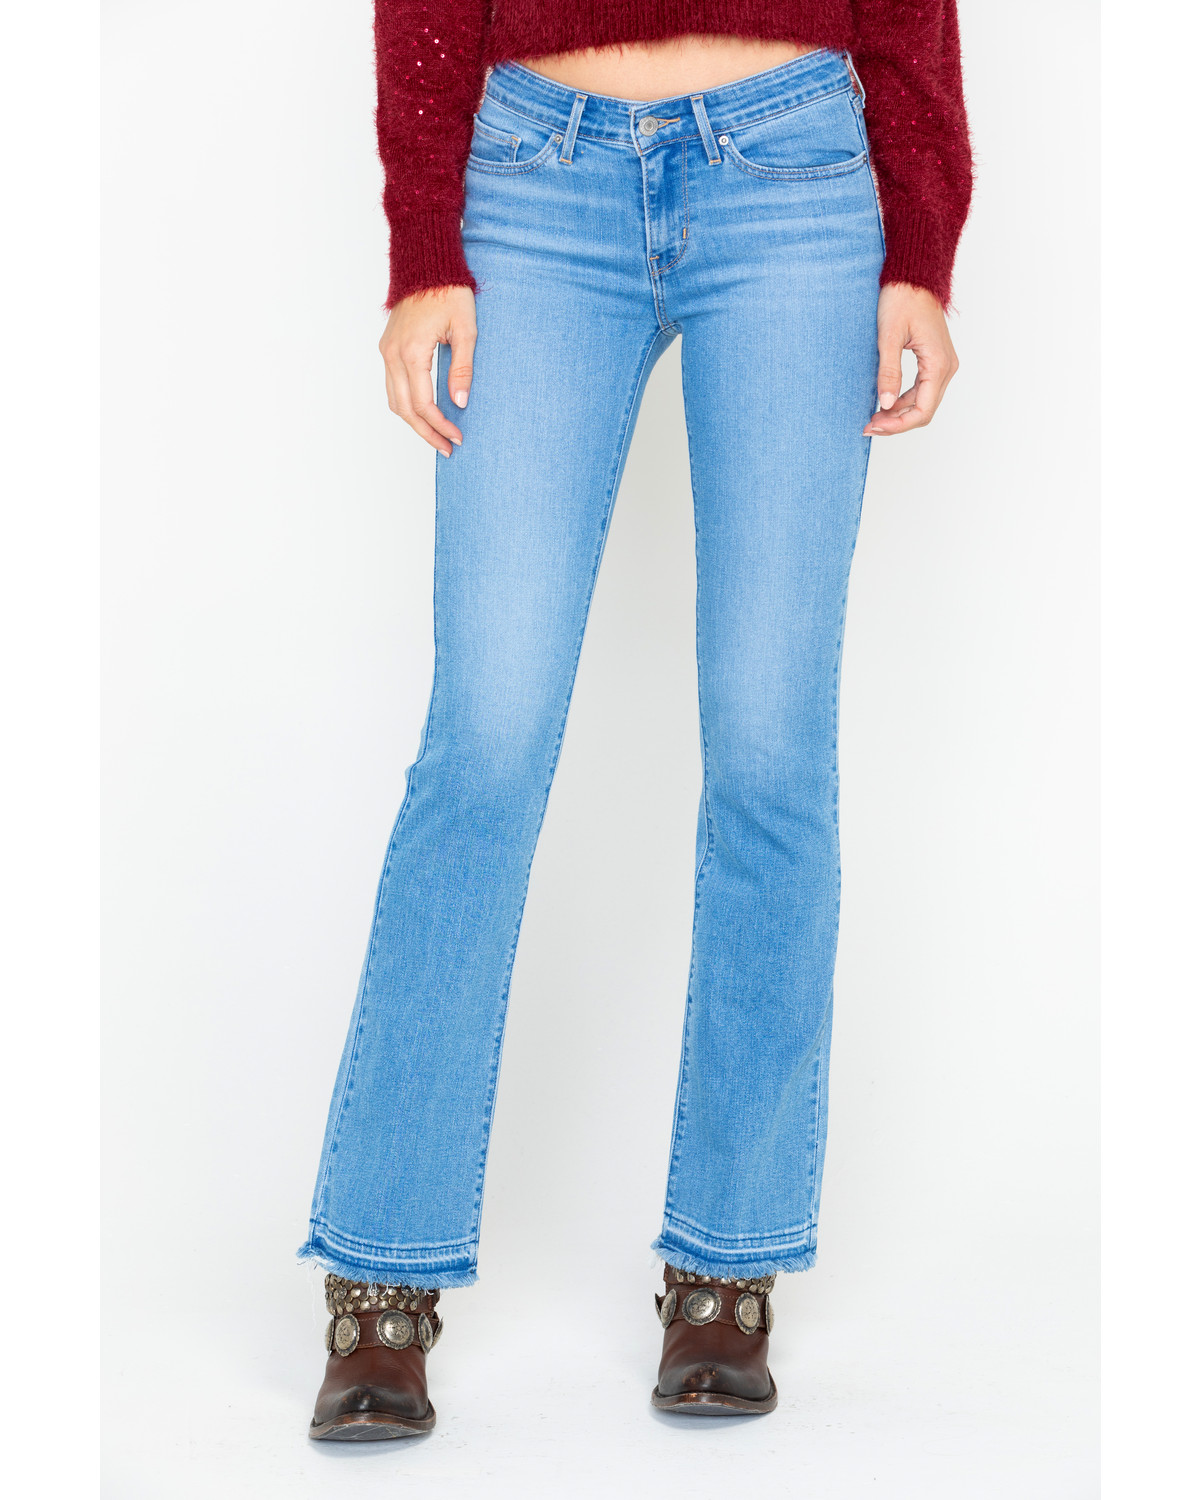 levi's 715 jeans